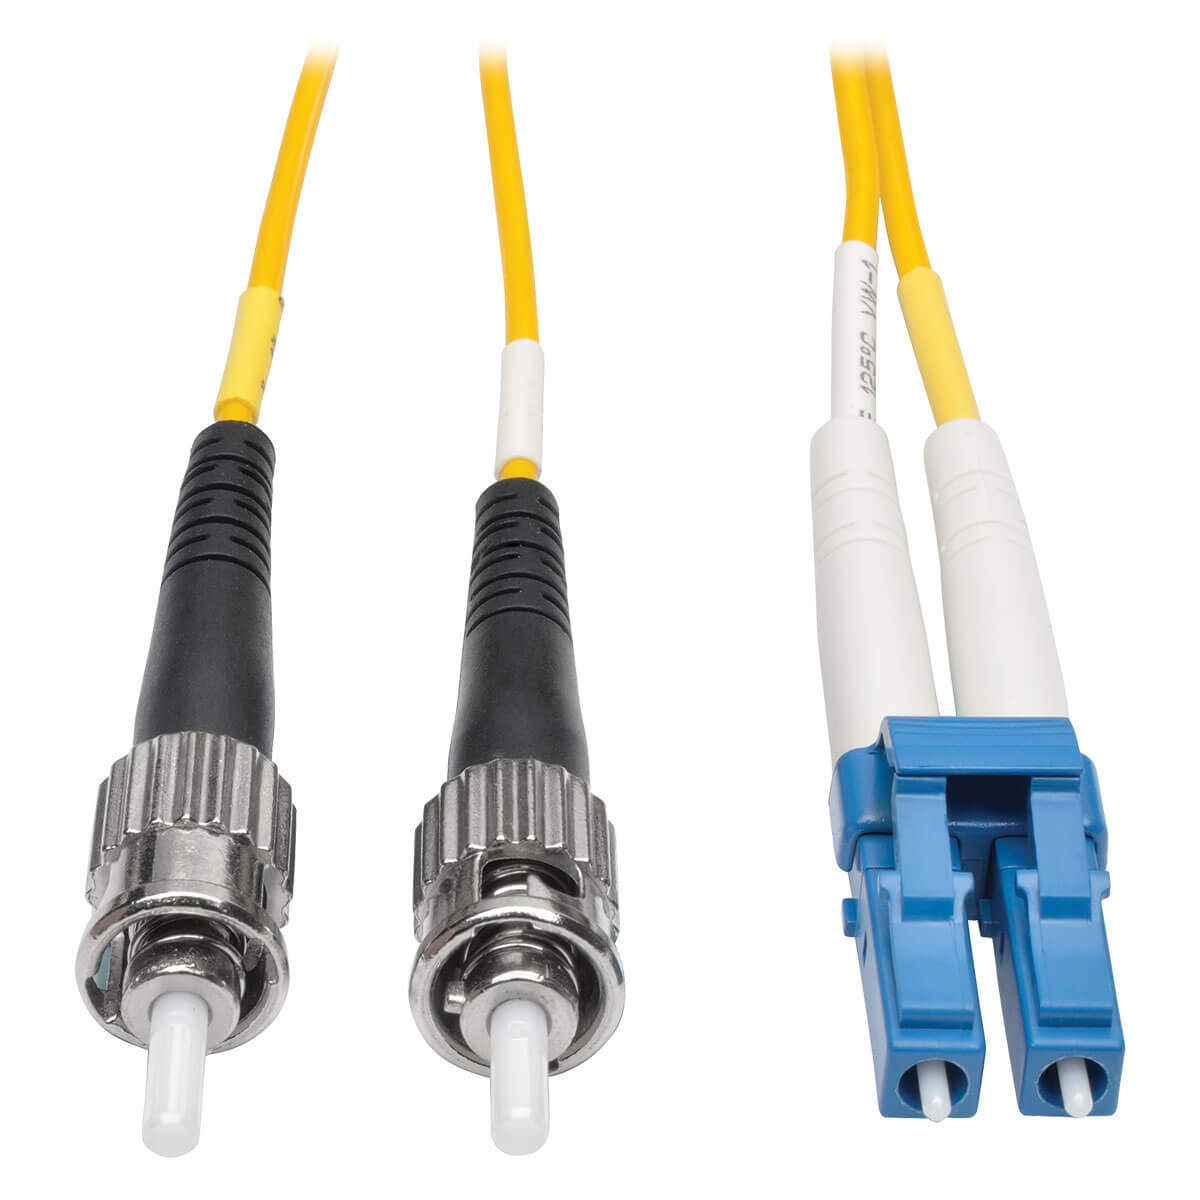 Cable Fibra Optica Tripp Lite Duplex Lc Macho St Macho 1M Amarillo